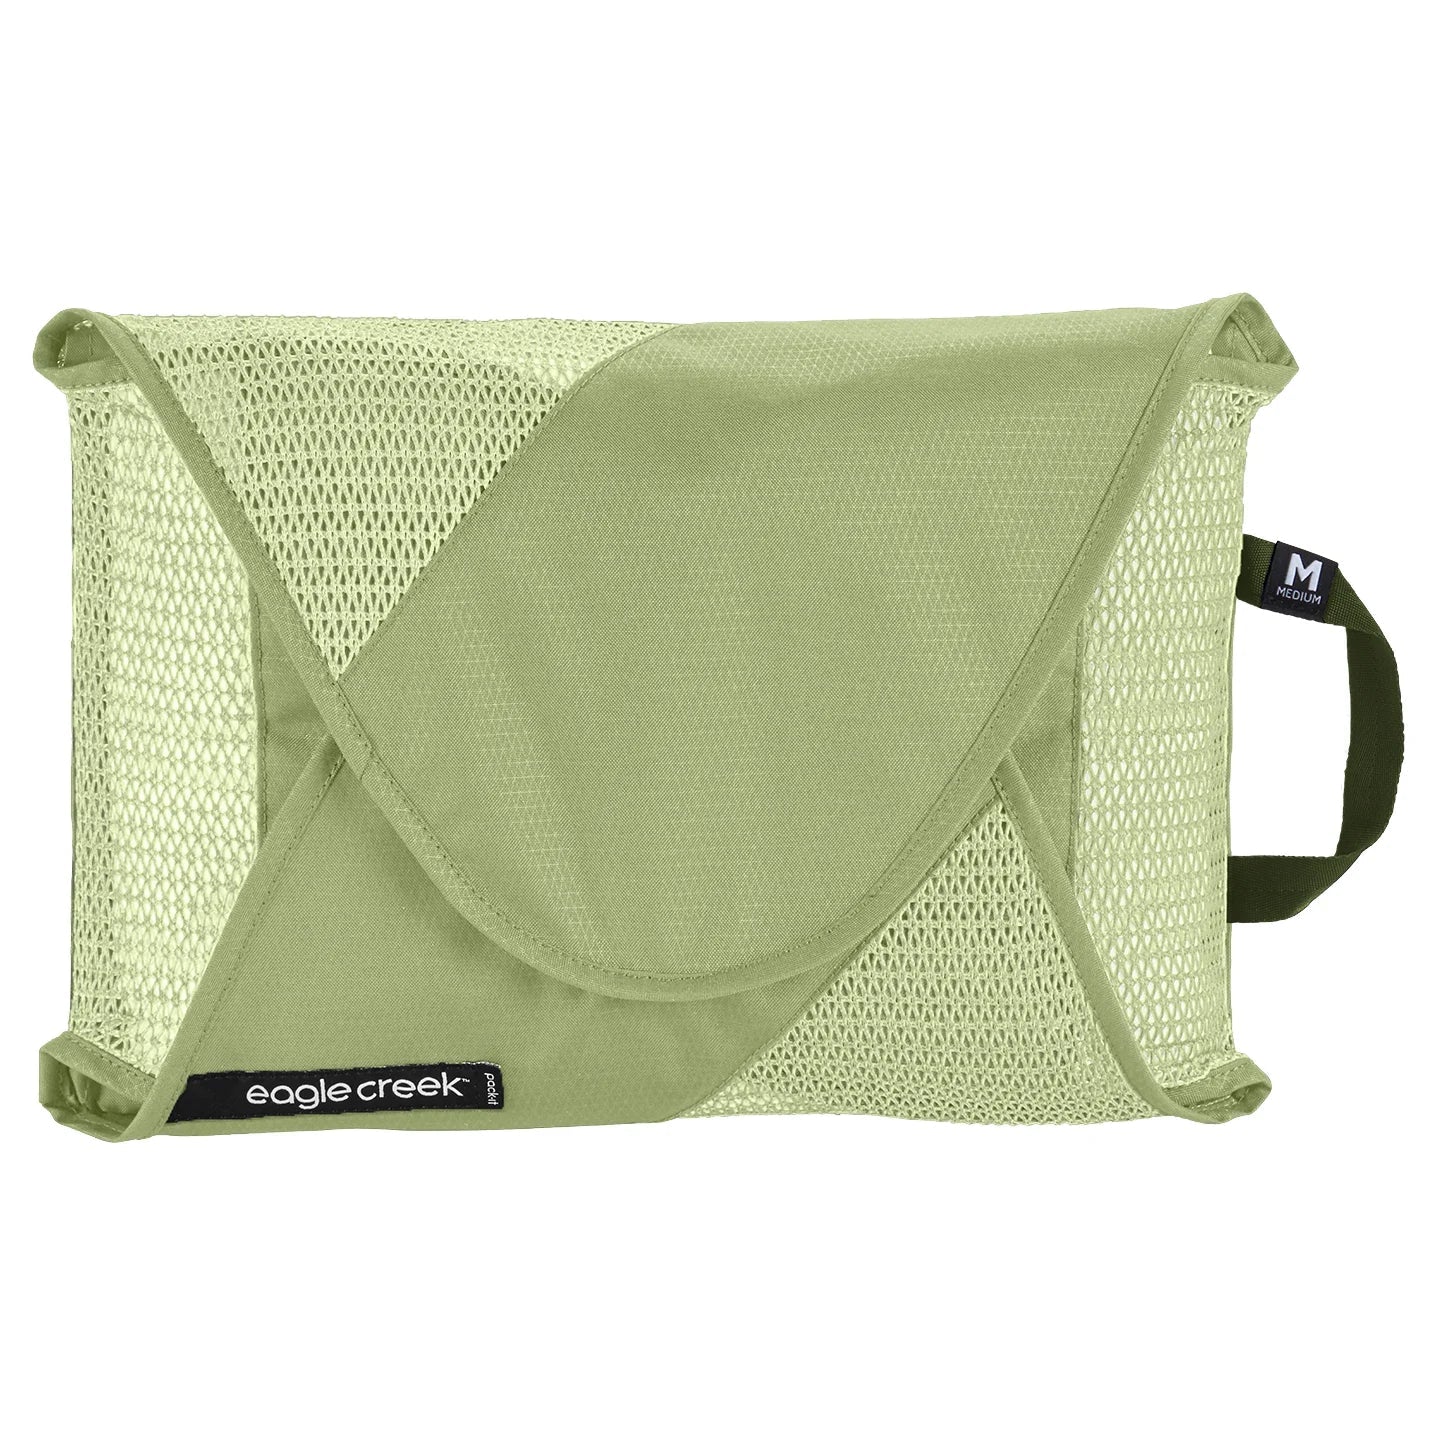 Eagle Creek Pack-It Garment Folder M sac à vêtements 36 cm - vert mousse